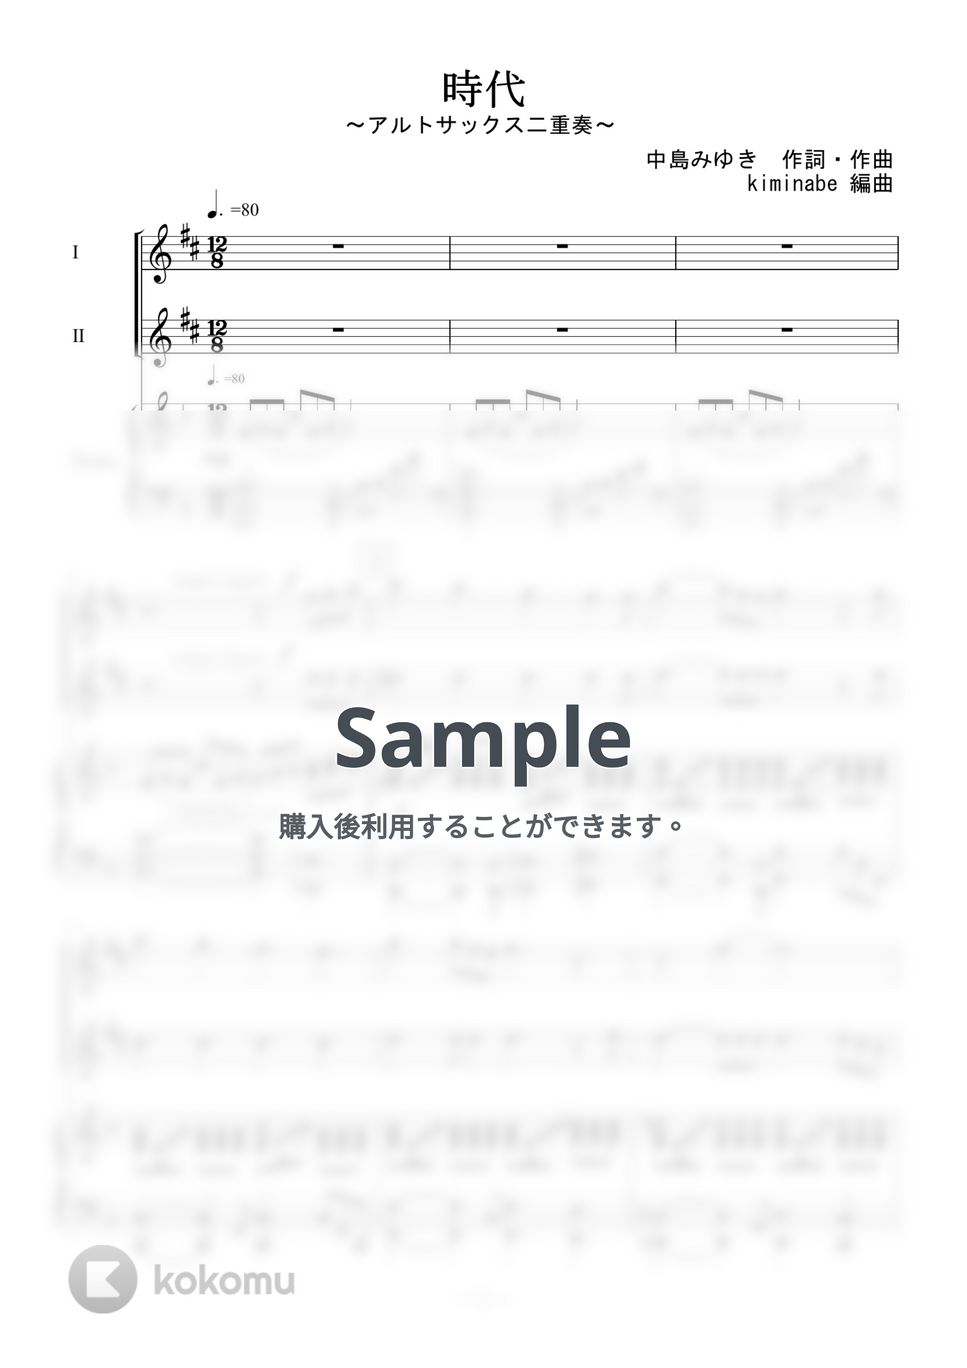 中島みゆき - 時代 (アルトサックス二重奏) by kiminabe